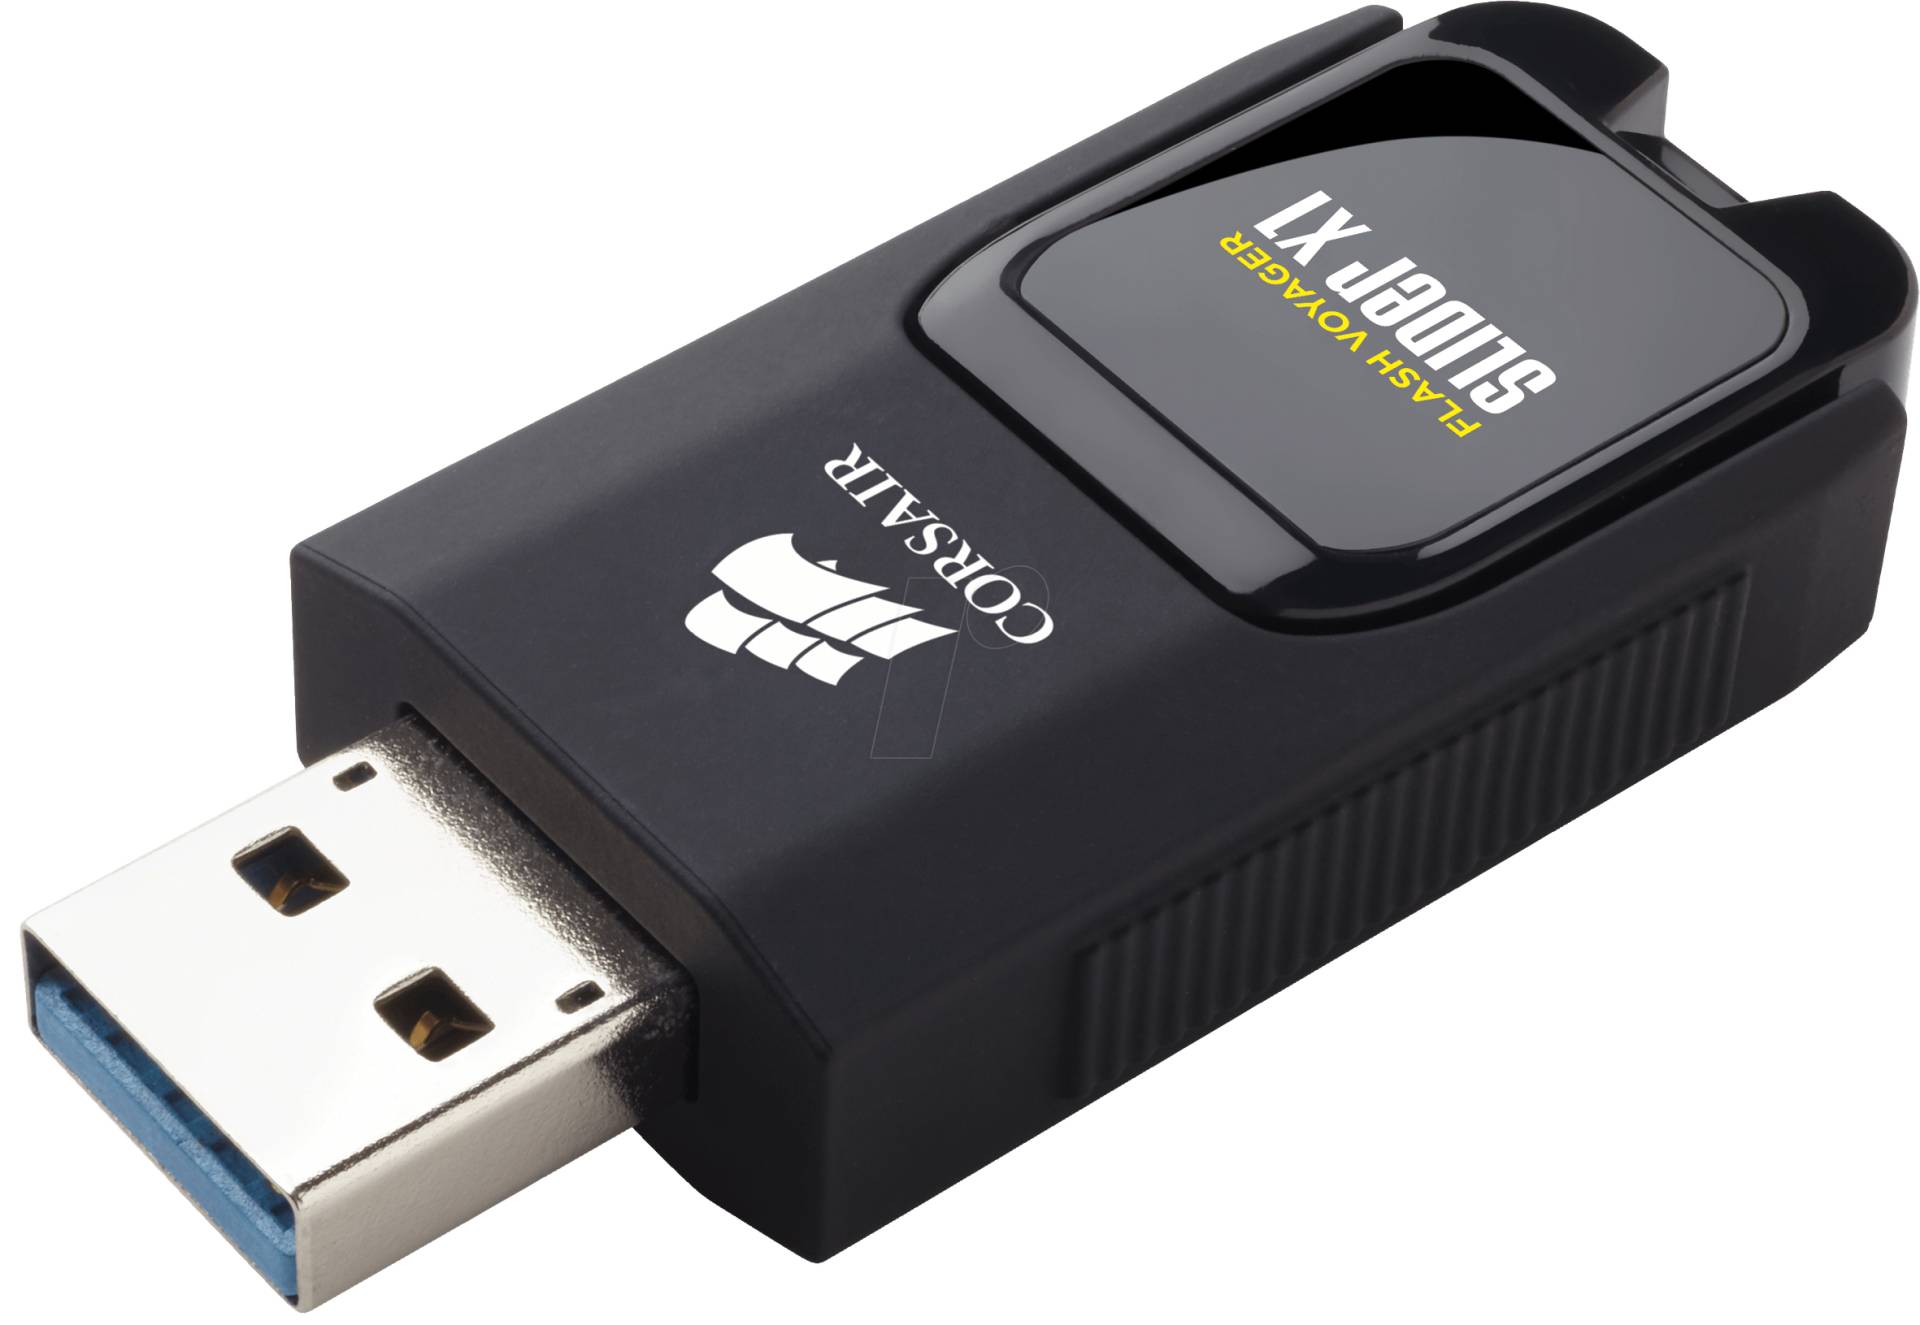 CMFSL3X1-64GB - USB-Stick, USB 3.0, 64 GB, Flash Voyager Slider X1 von Corsair